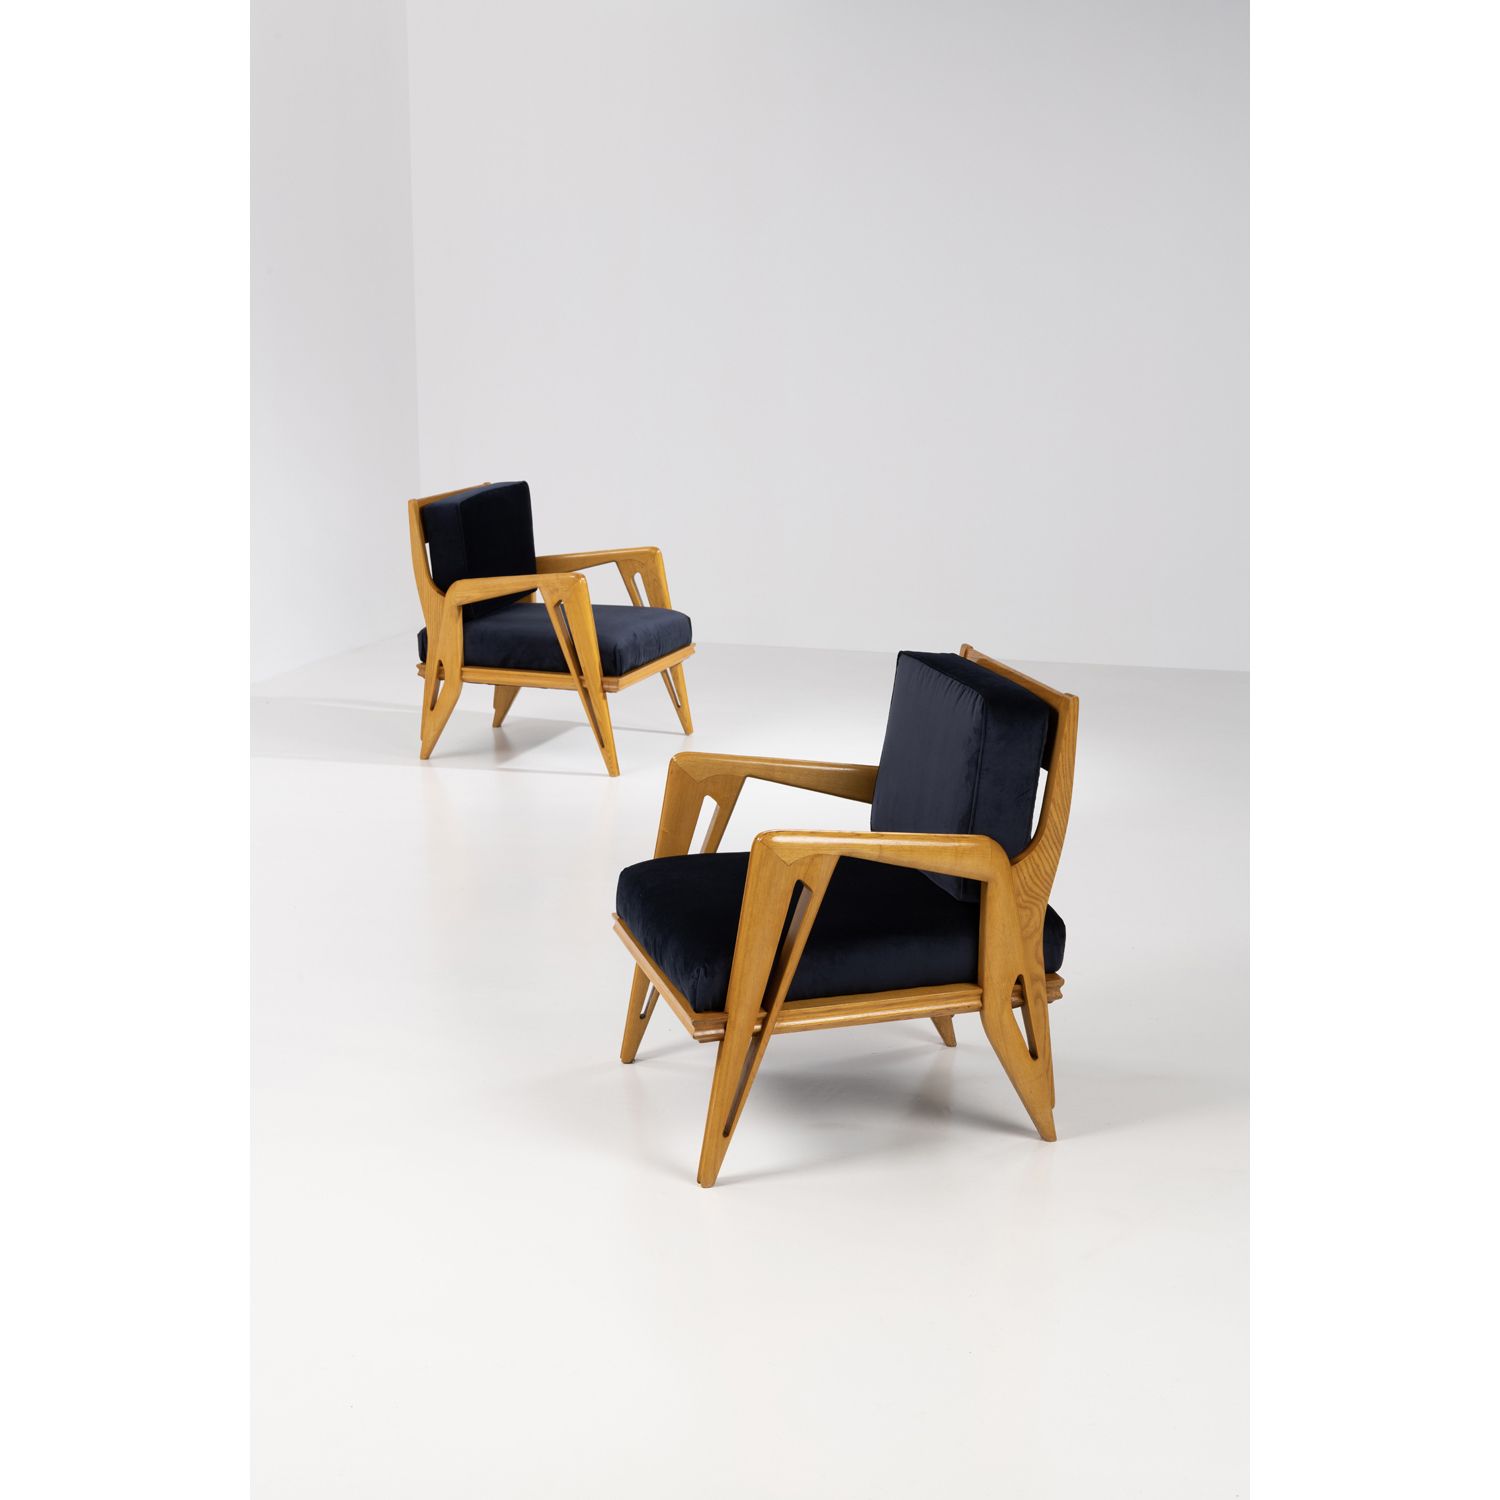 Null 弗朗科-坎波（20岁）

& Carlo Graffi (1925-1985), 归于

一对扶手椅

木材和纺织品

创建于1950年代的模型

高&hellip;